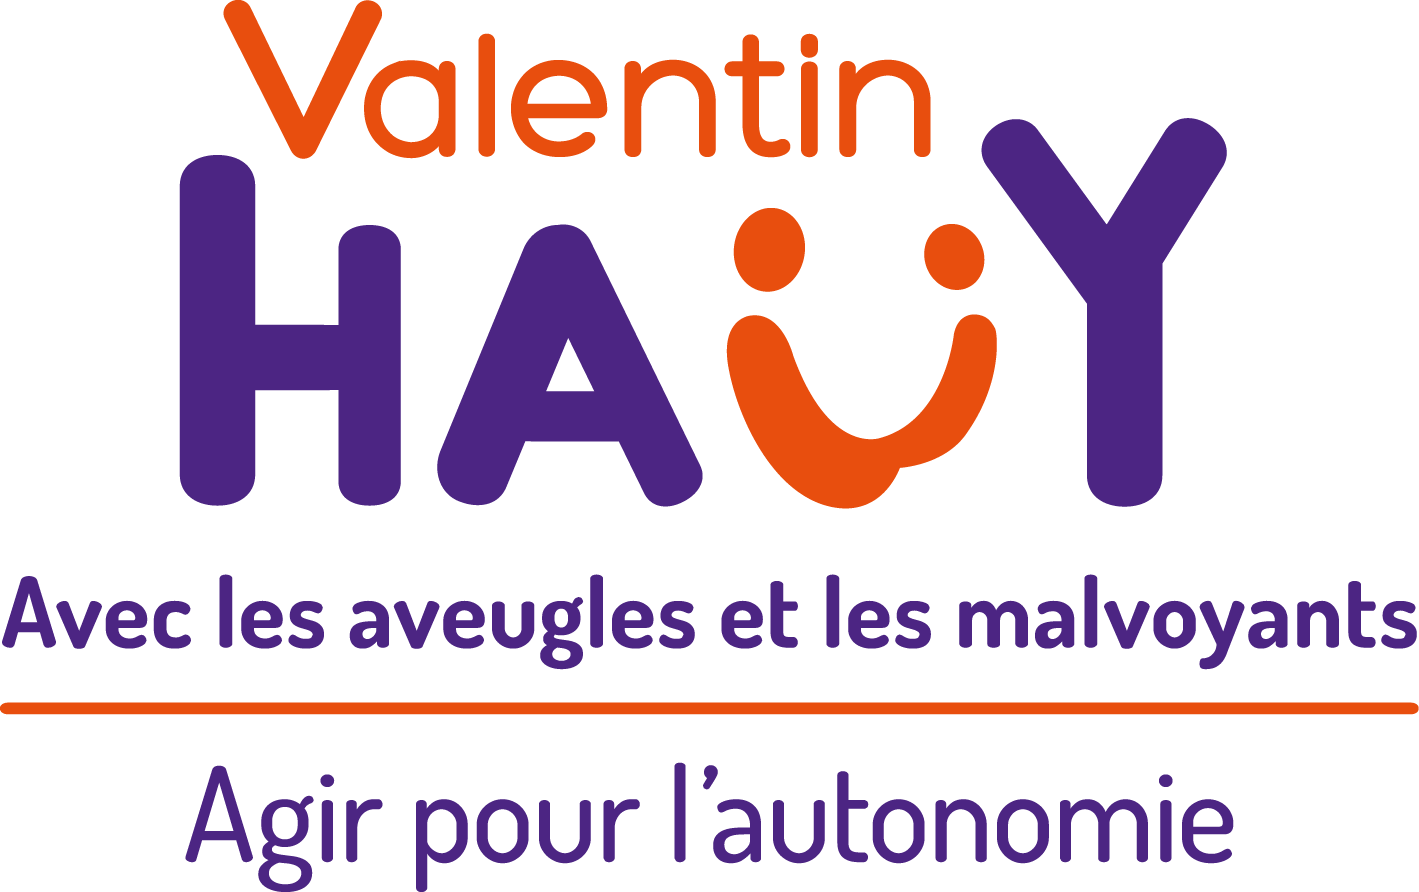 Président (e) de l'association Valentin Haüy à Nantes